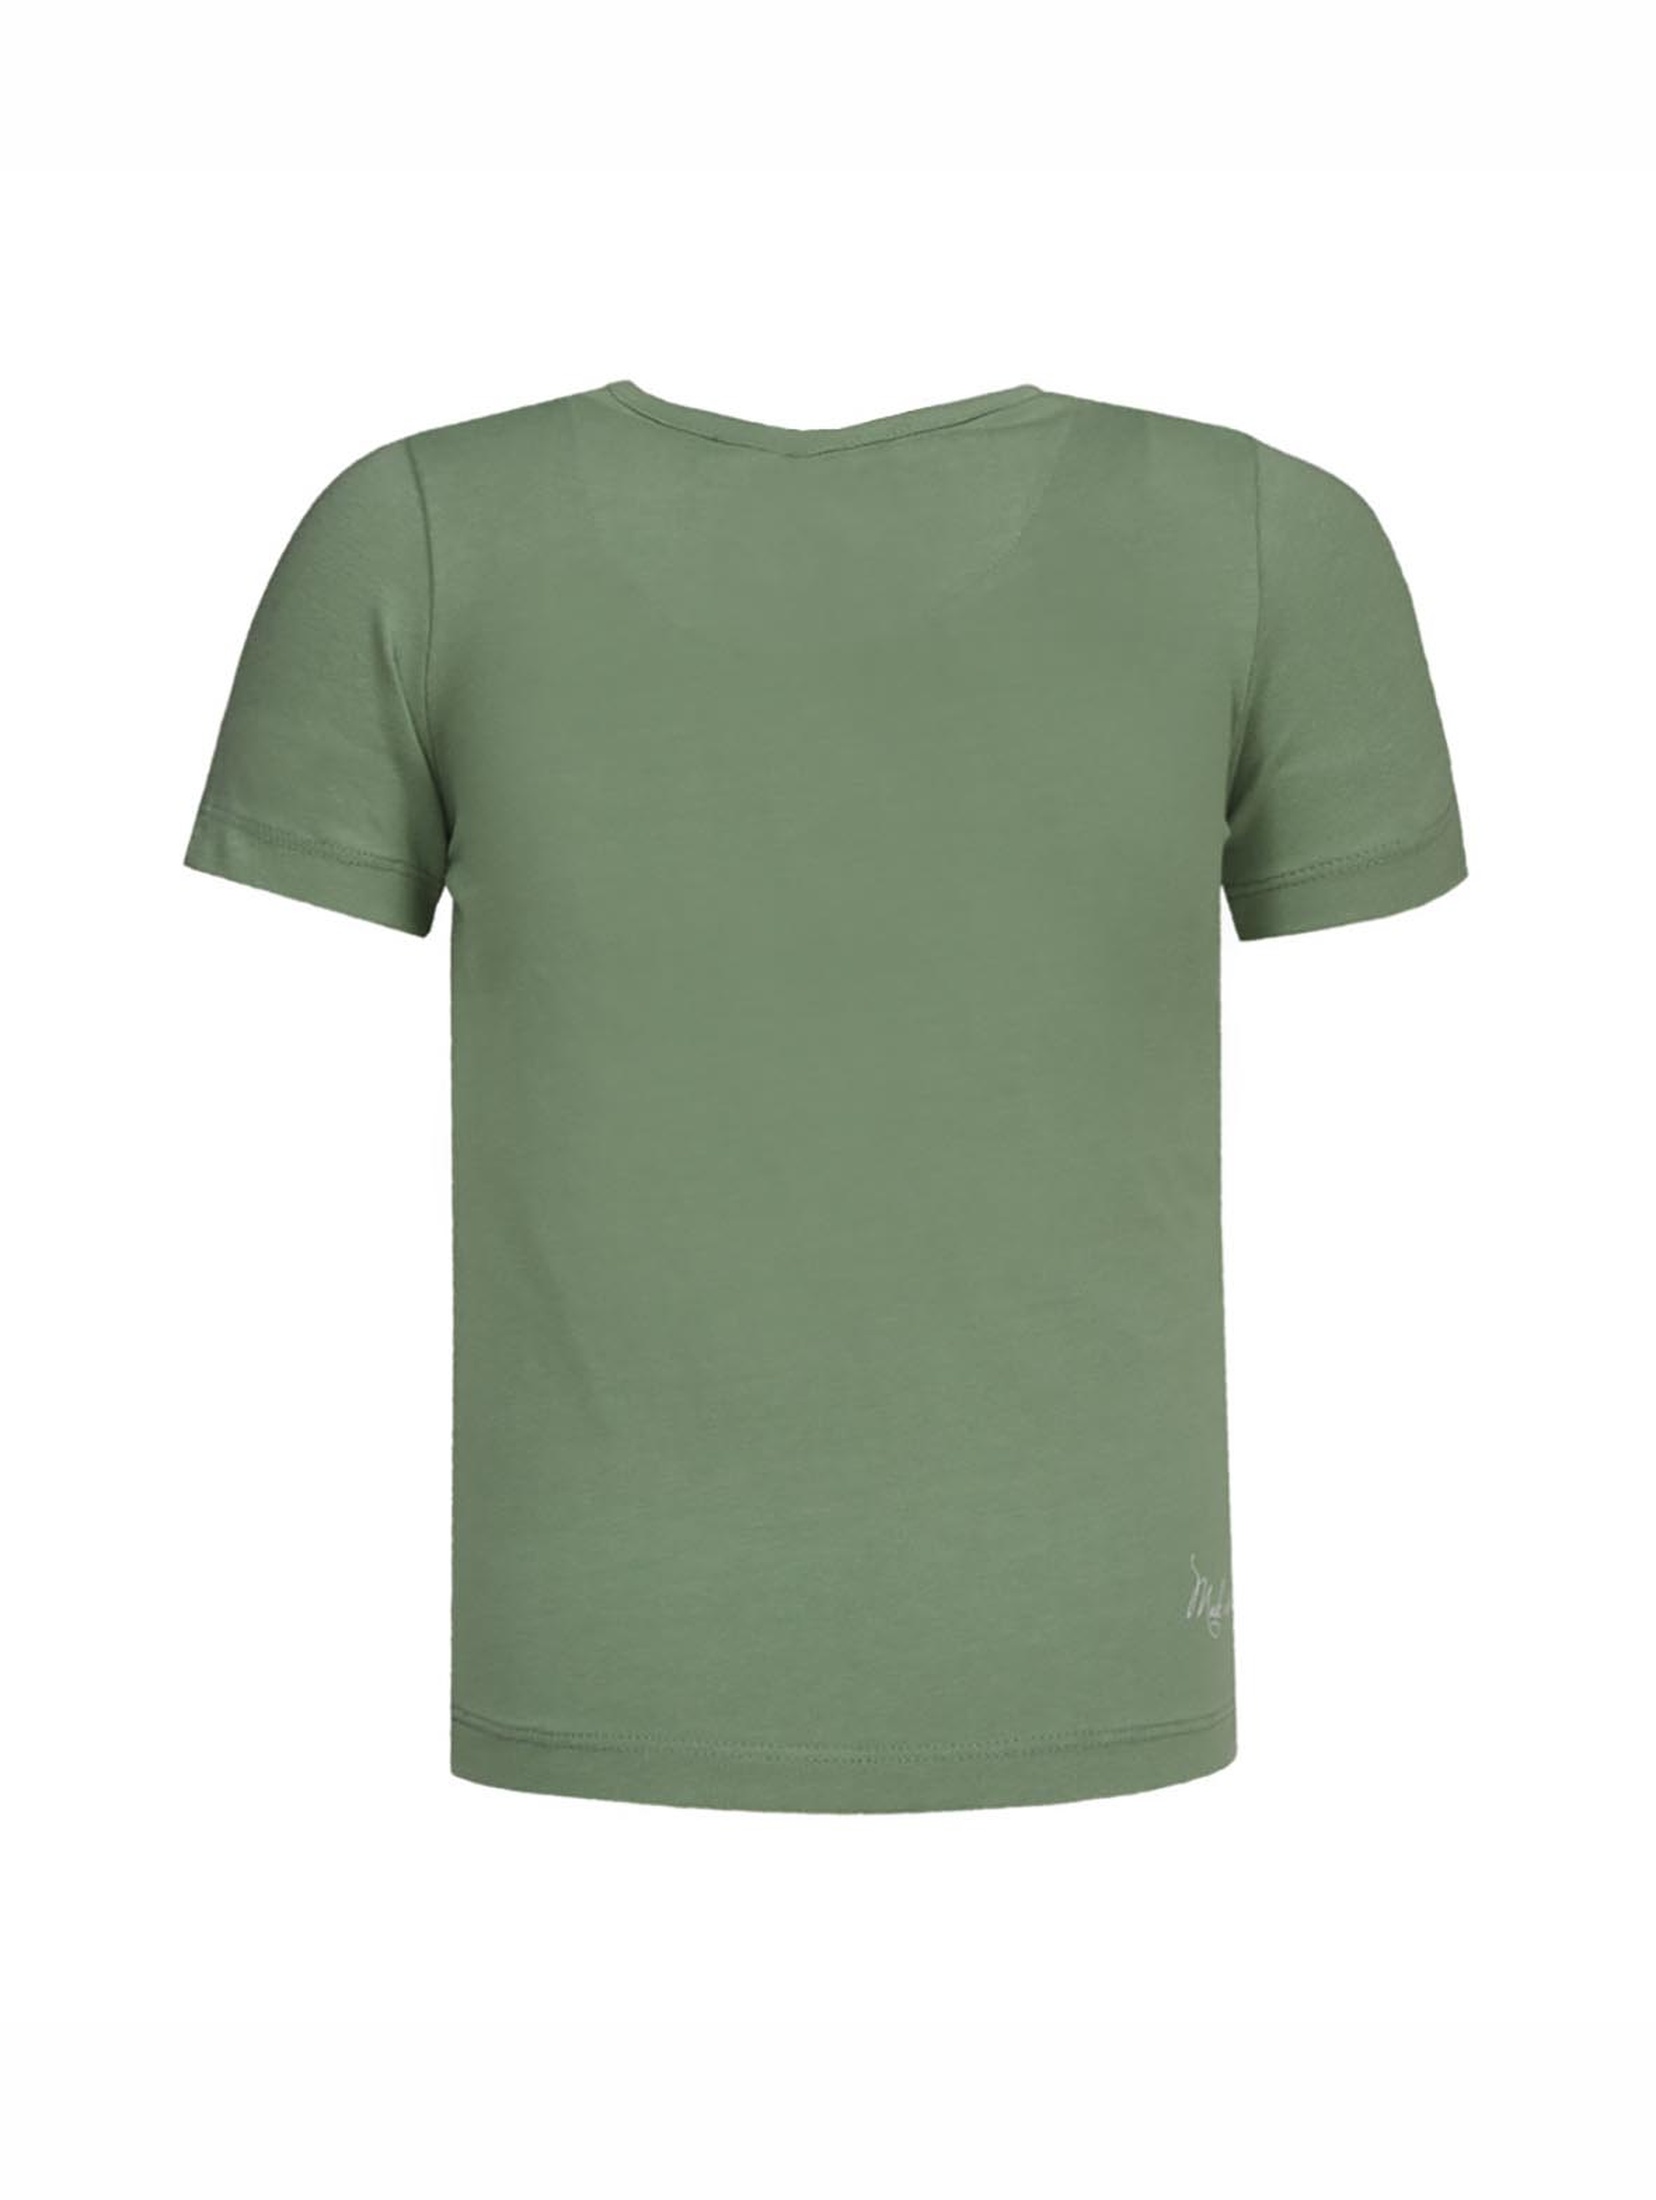 T-shirt dziewczęcy zielony ze stokrotką - Lief